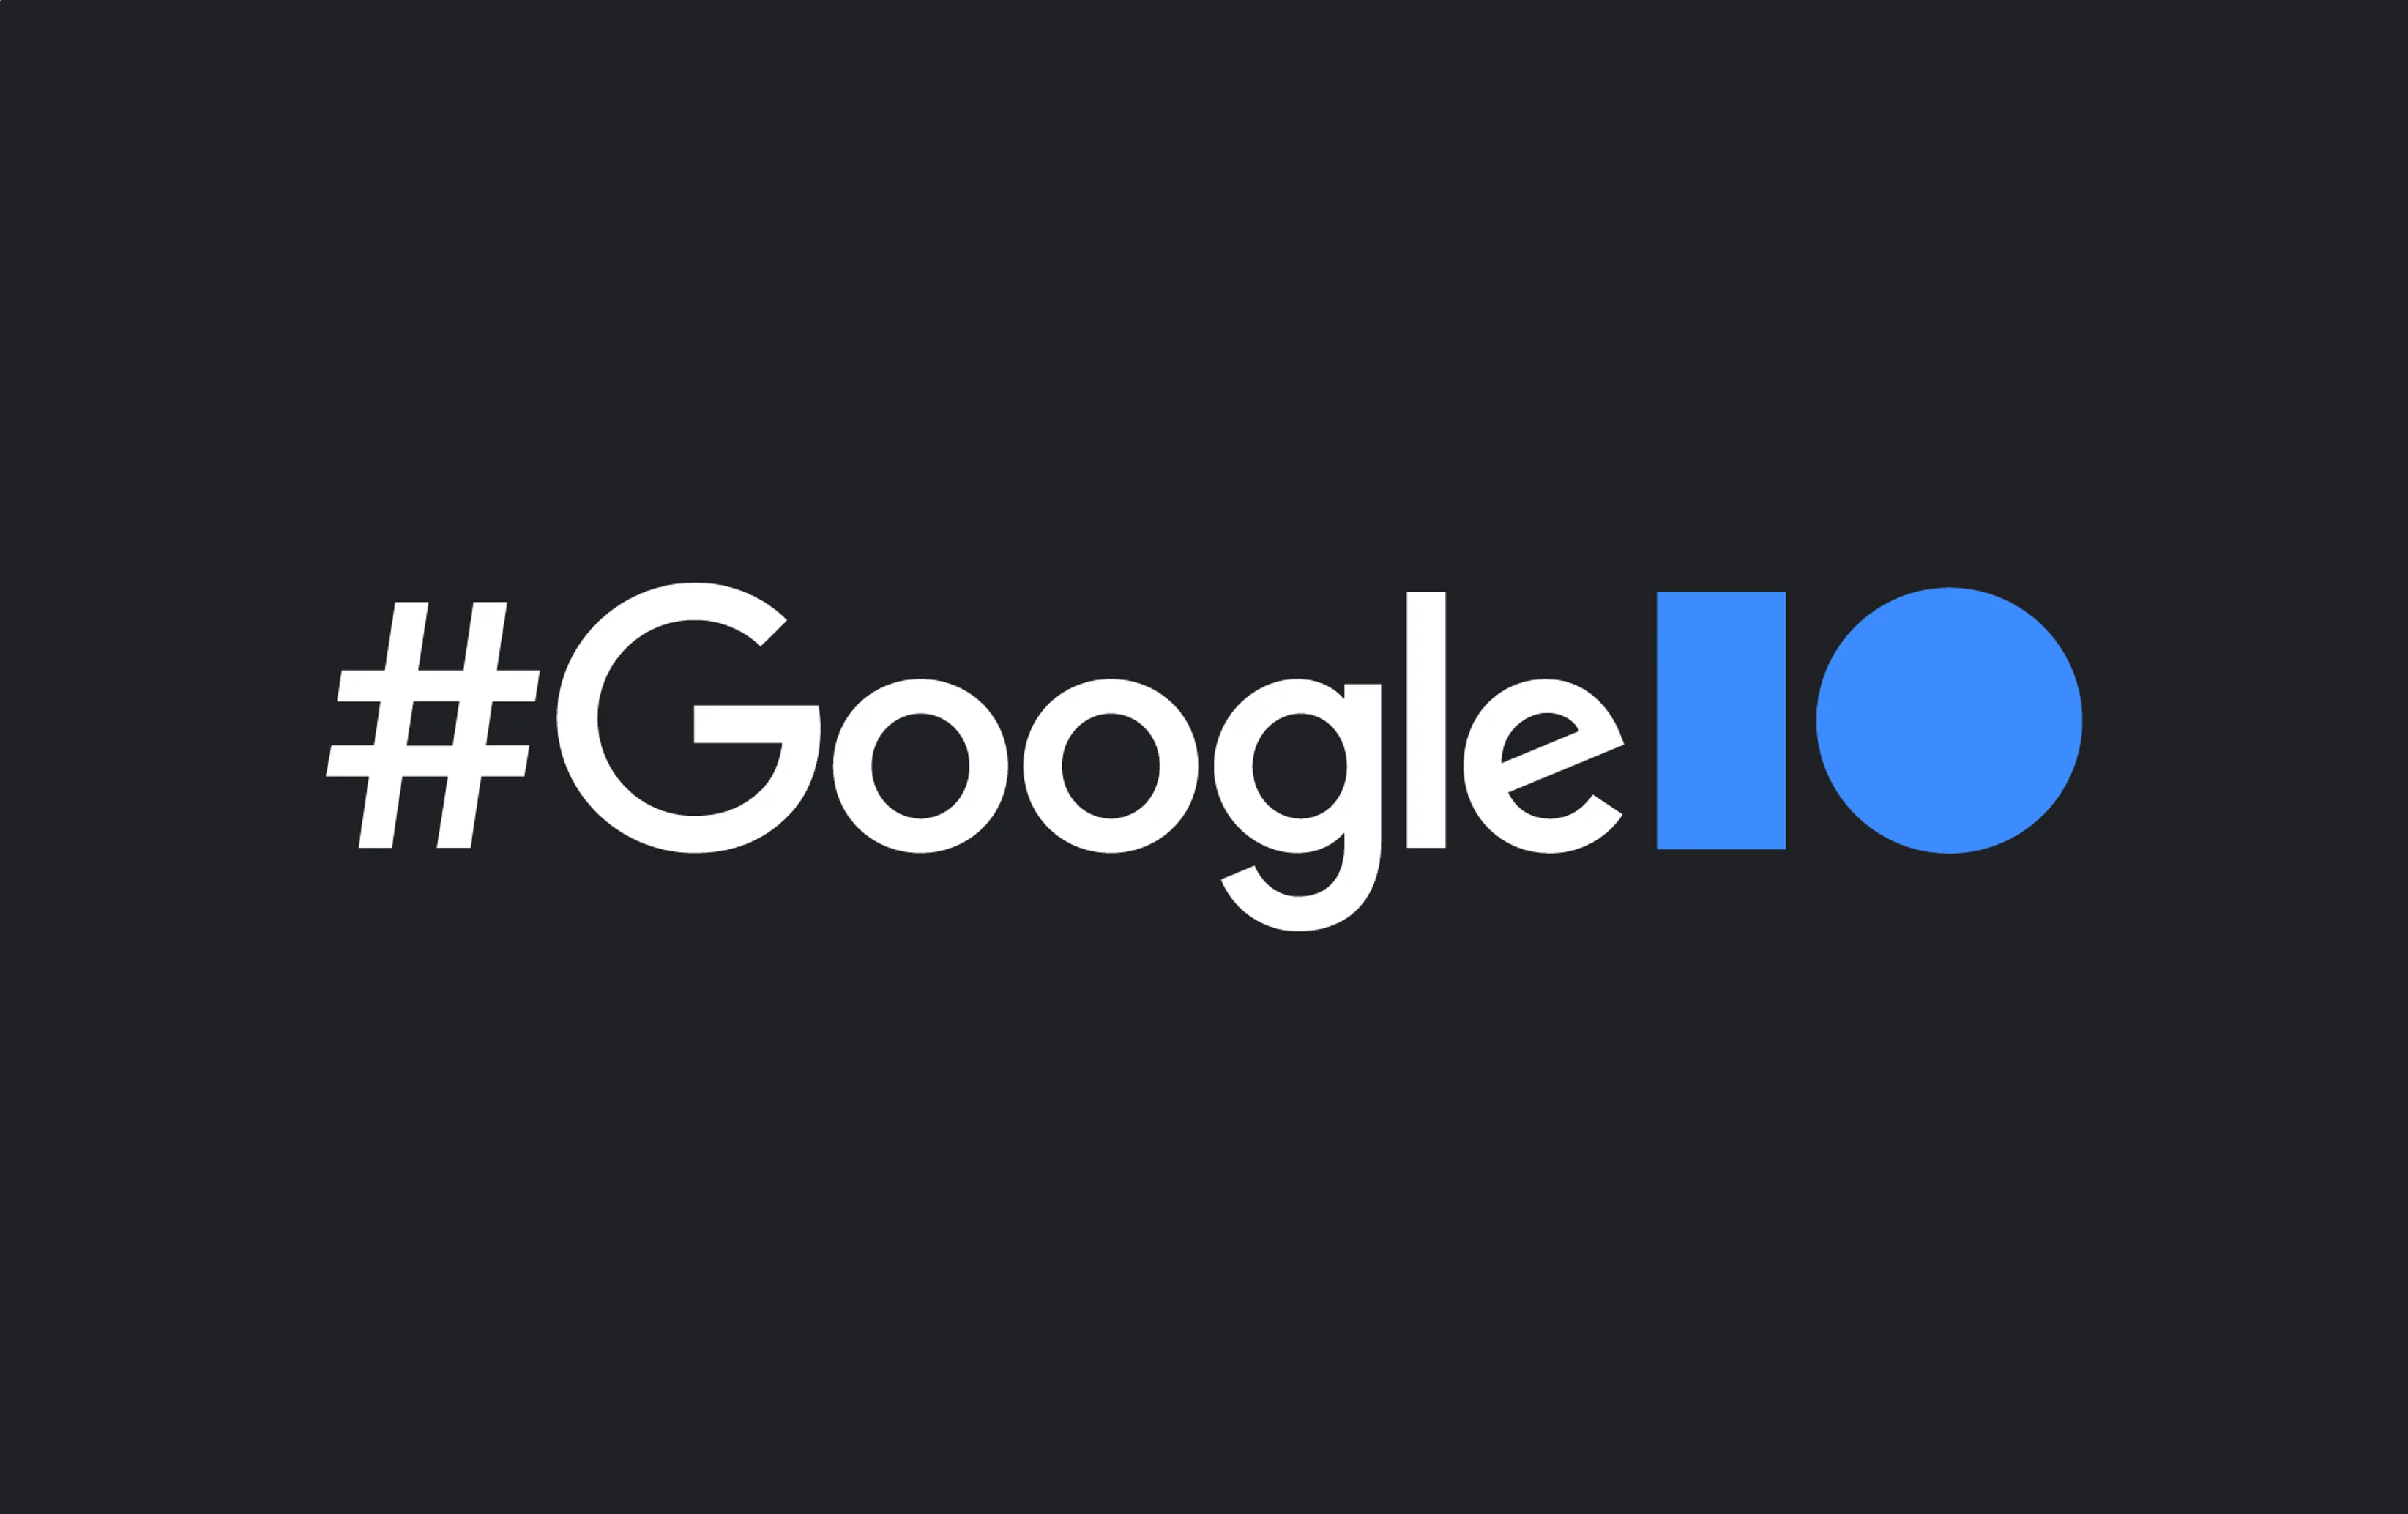 Hashtag Google I/O